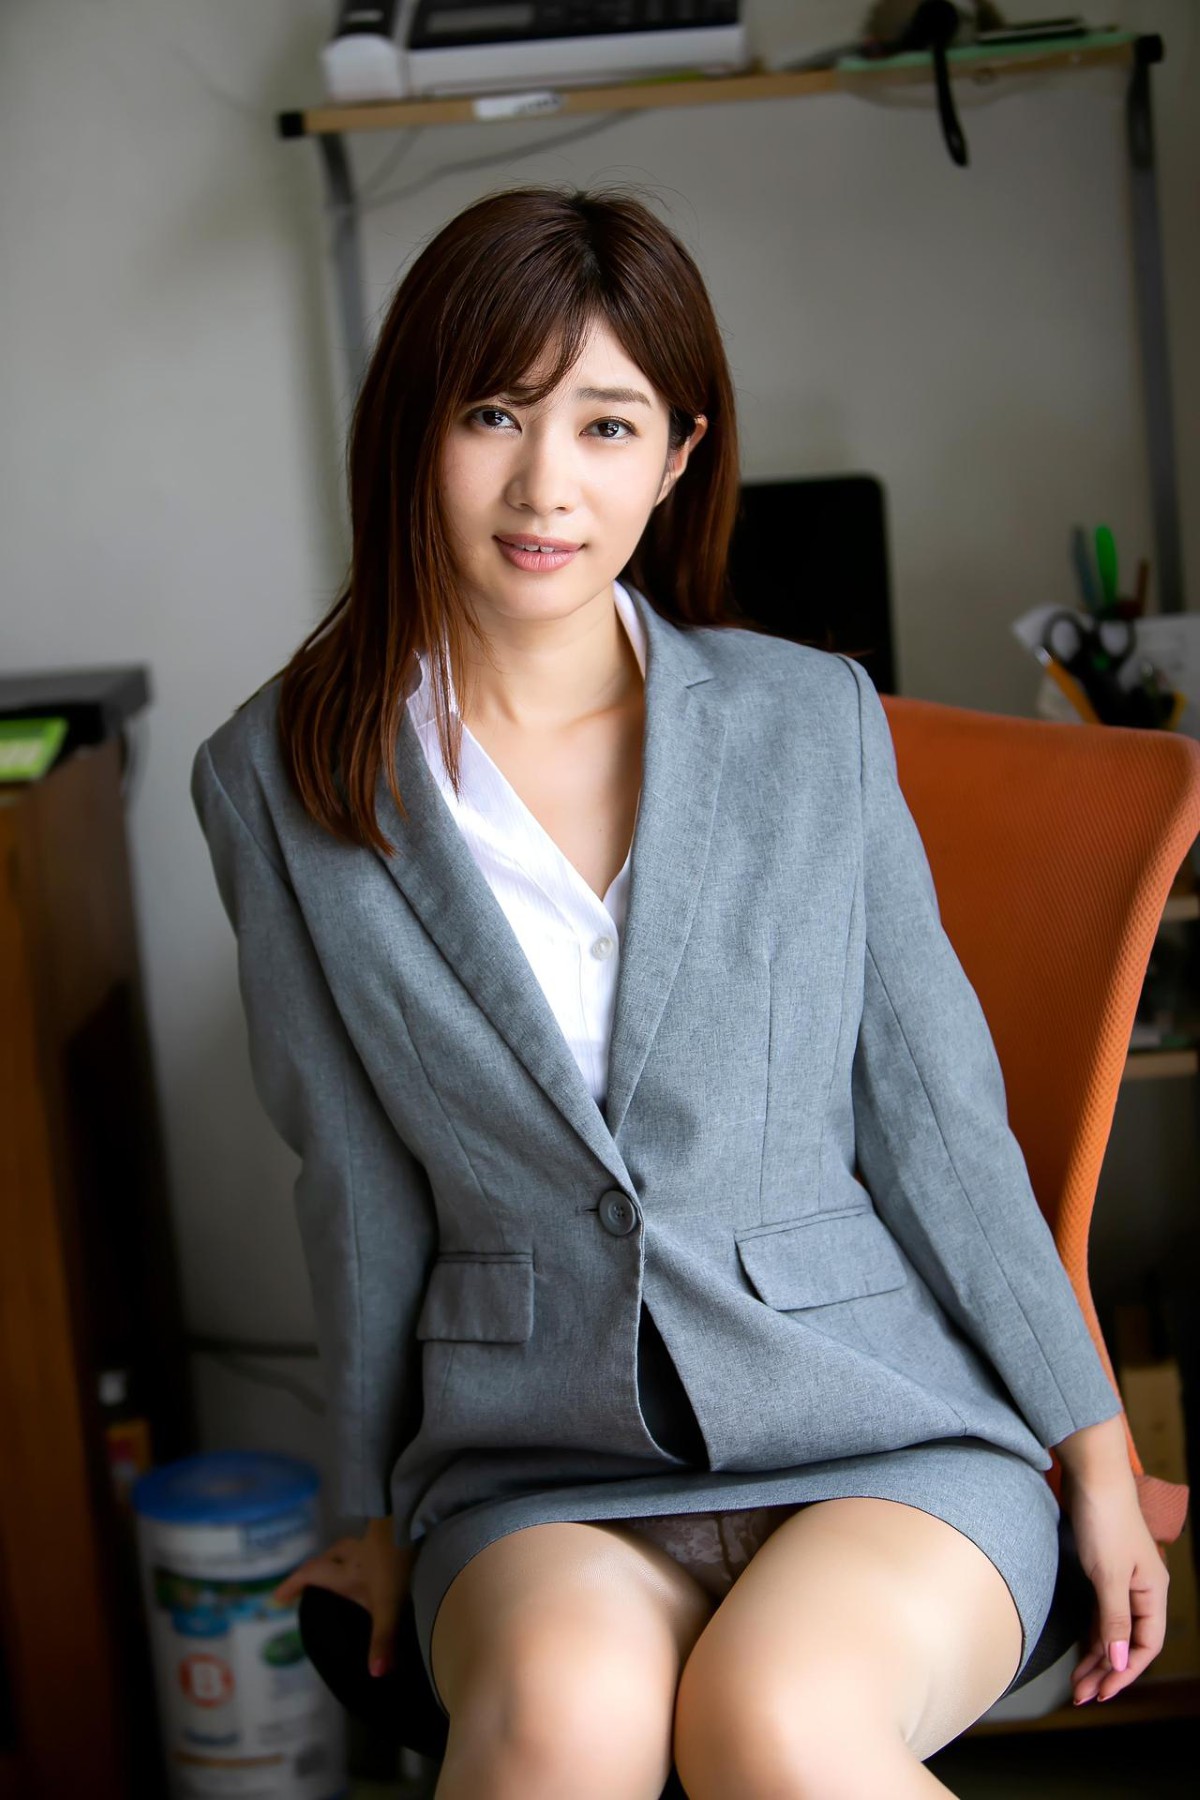 Photobook 2020 03 16 Mai Ishioka 石岡真衣 Mai Styles Angel In A Suit A 0036 0707437777.jpg